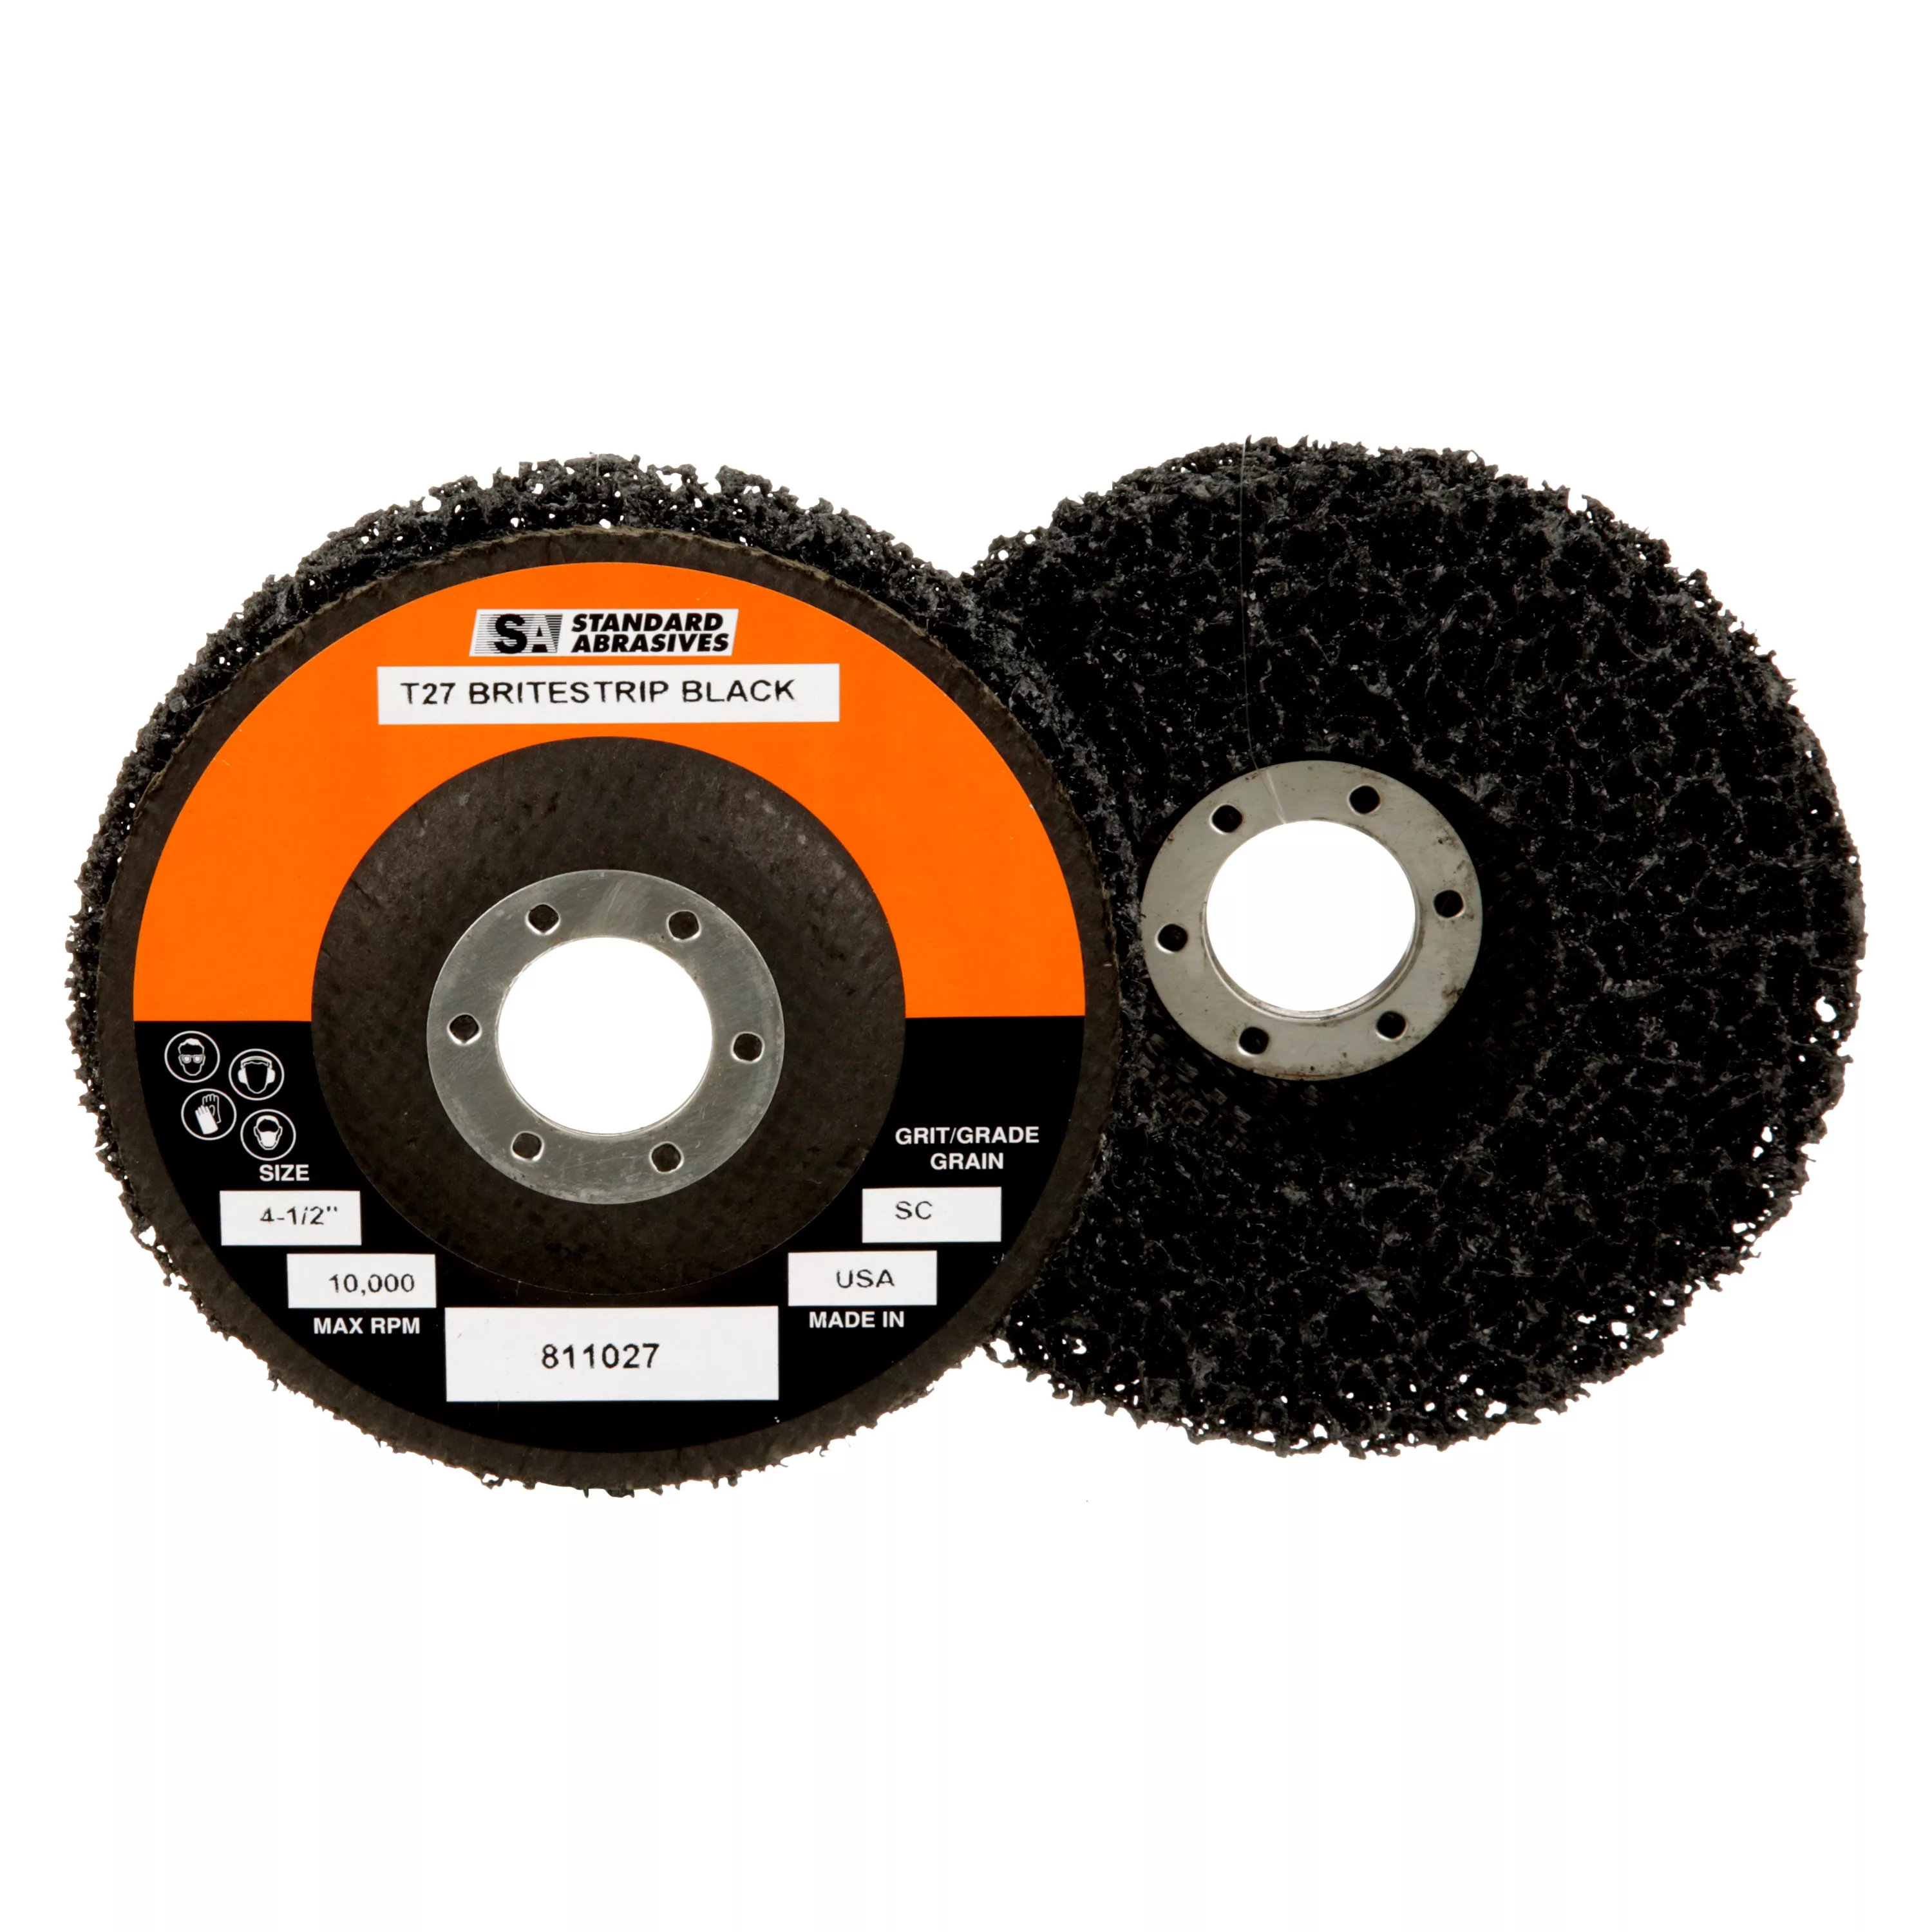 SKU 7000046837 | Standard Abrasives™ Cleaning Disc